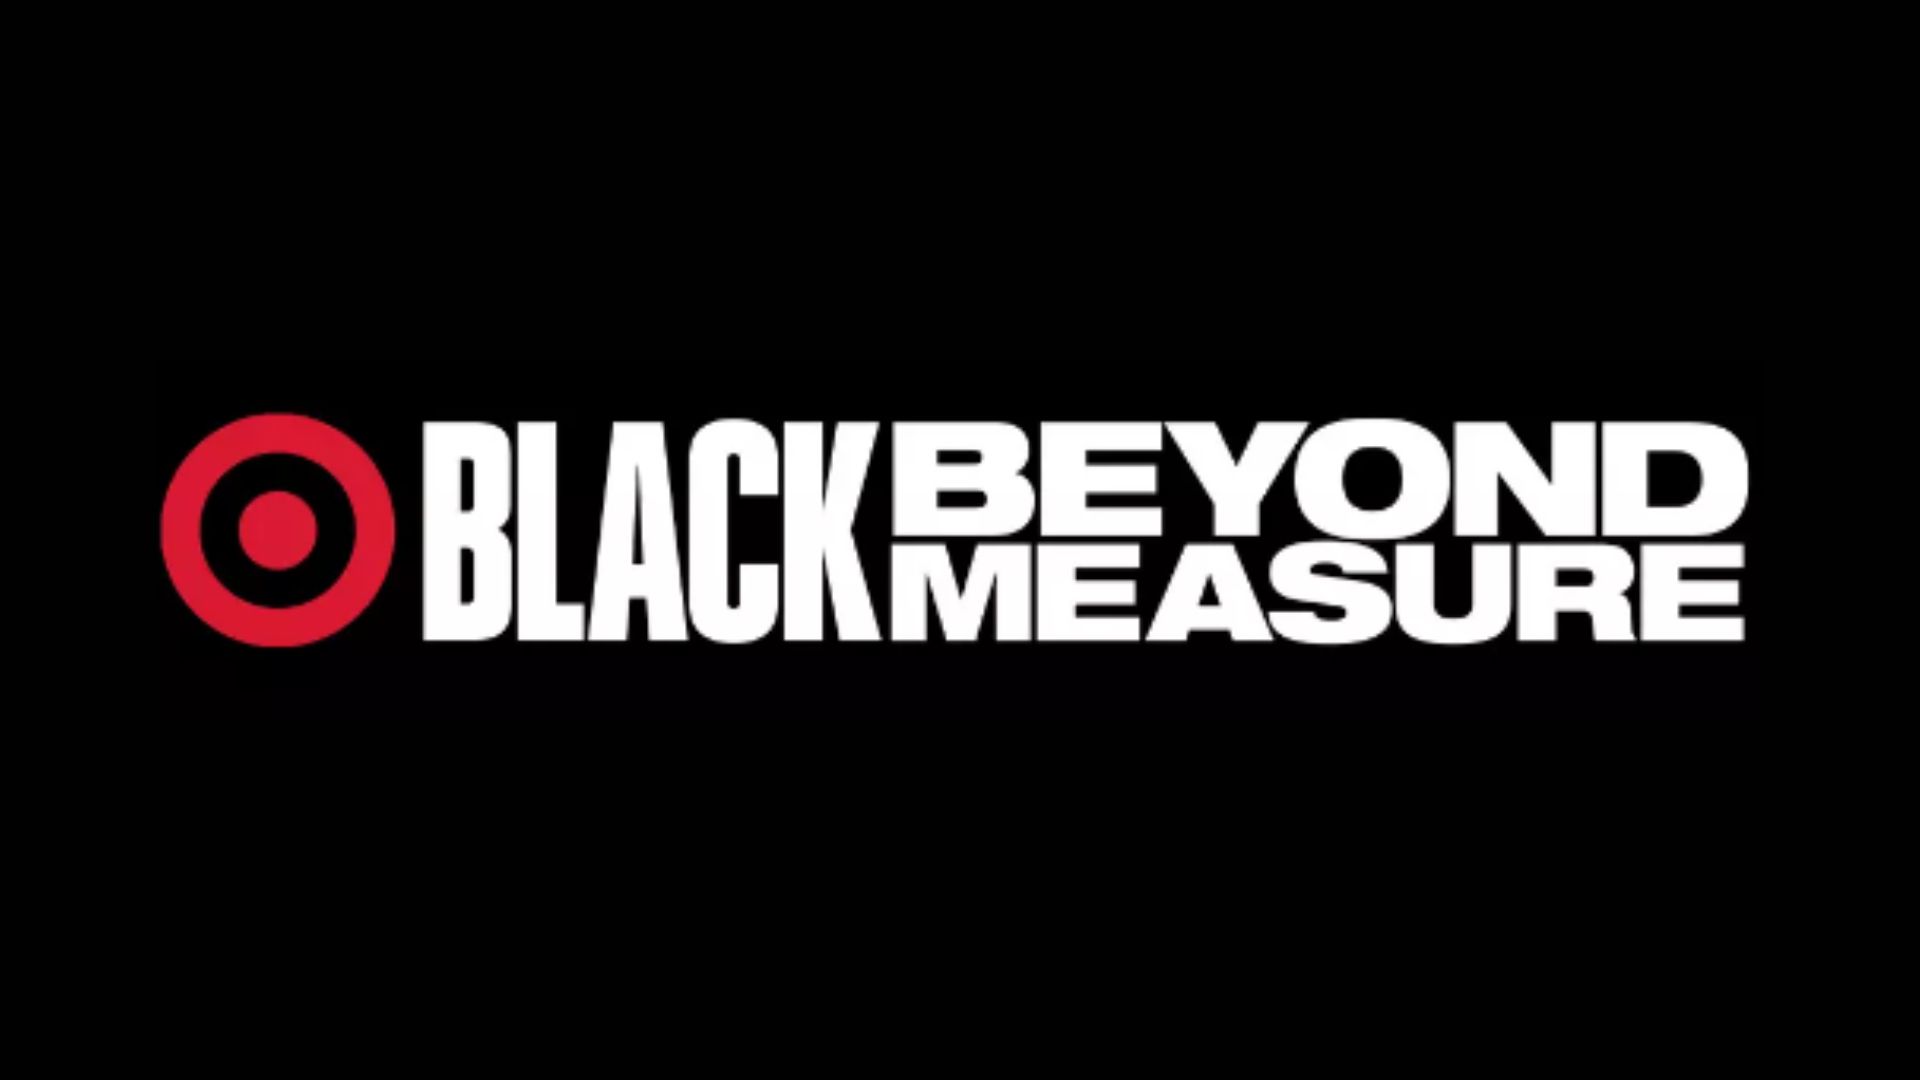 Black Beyond Measure